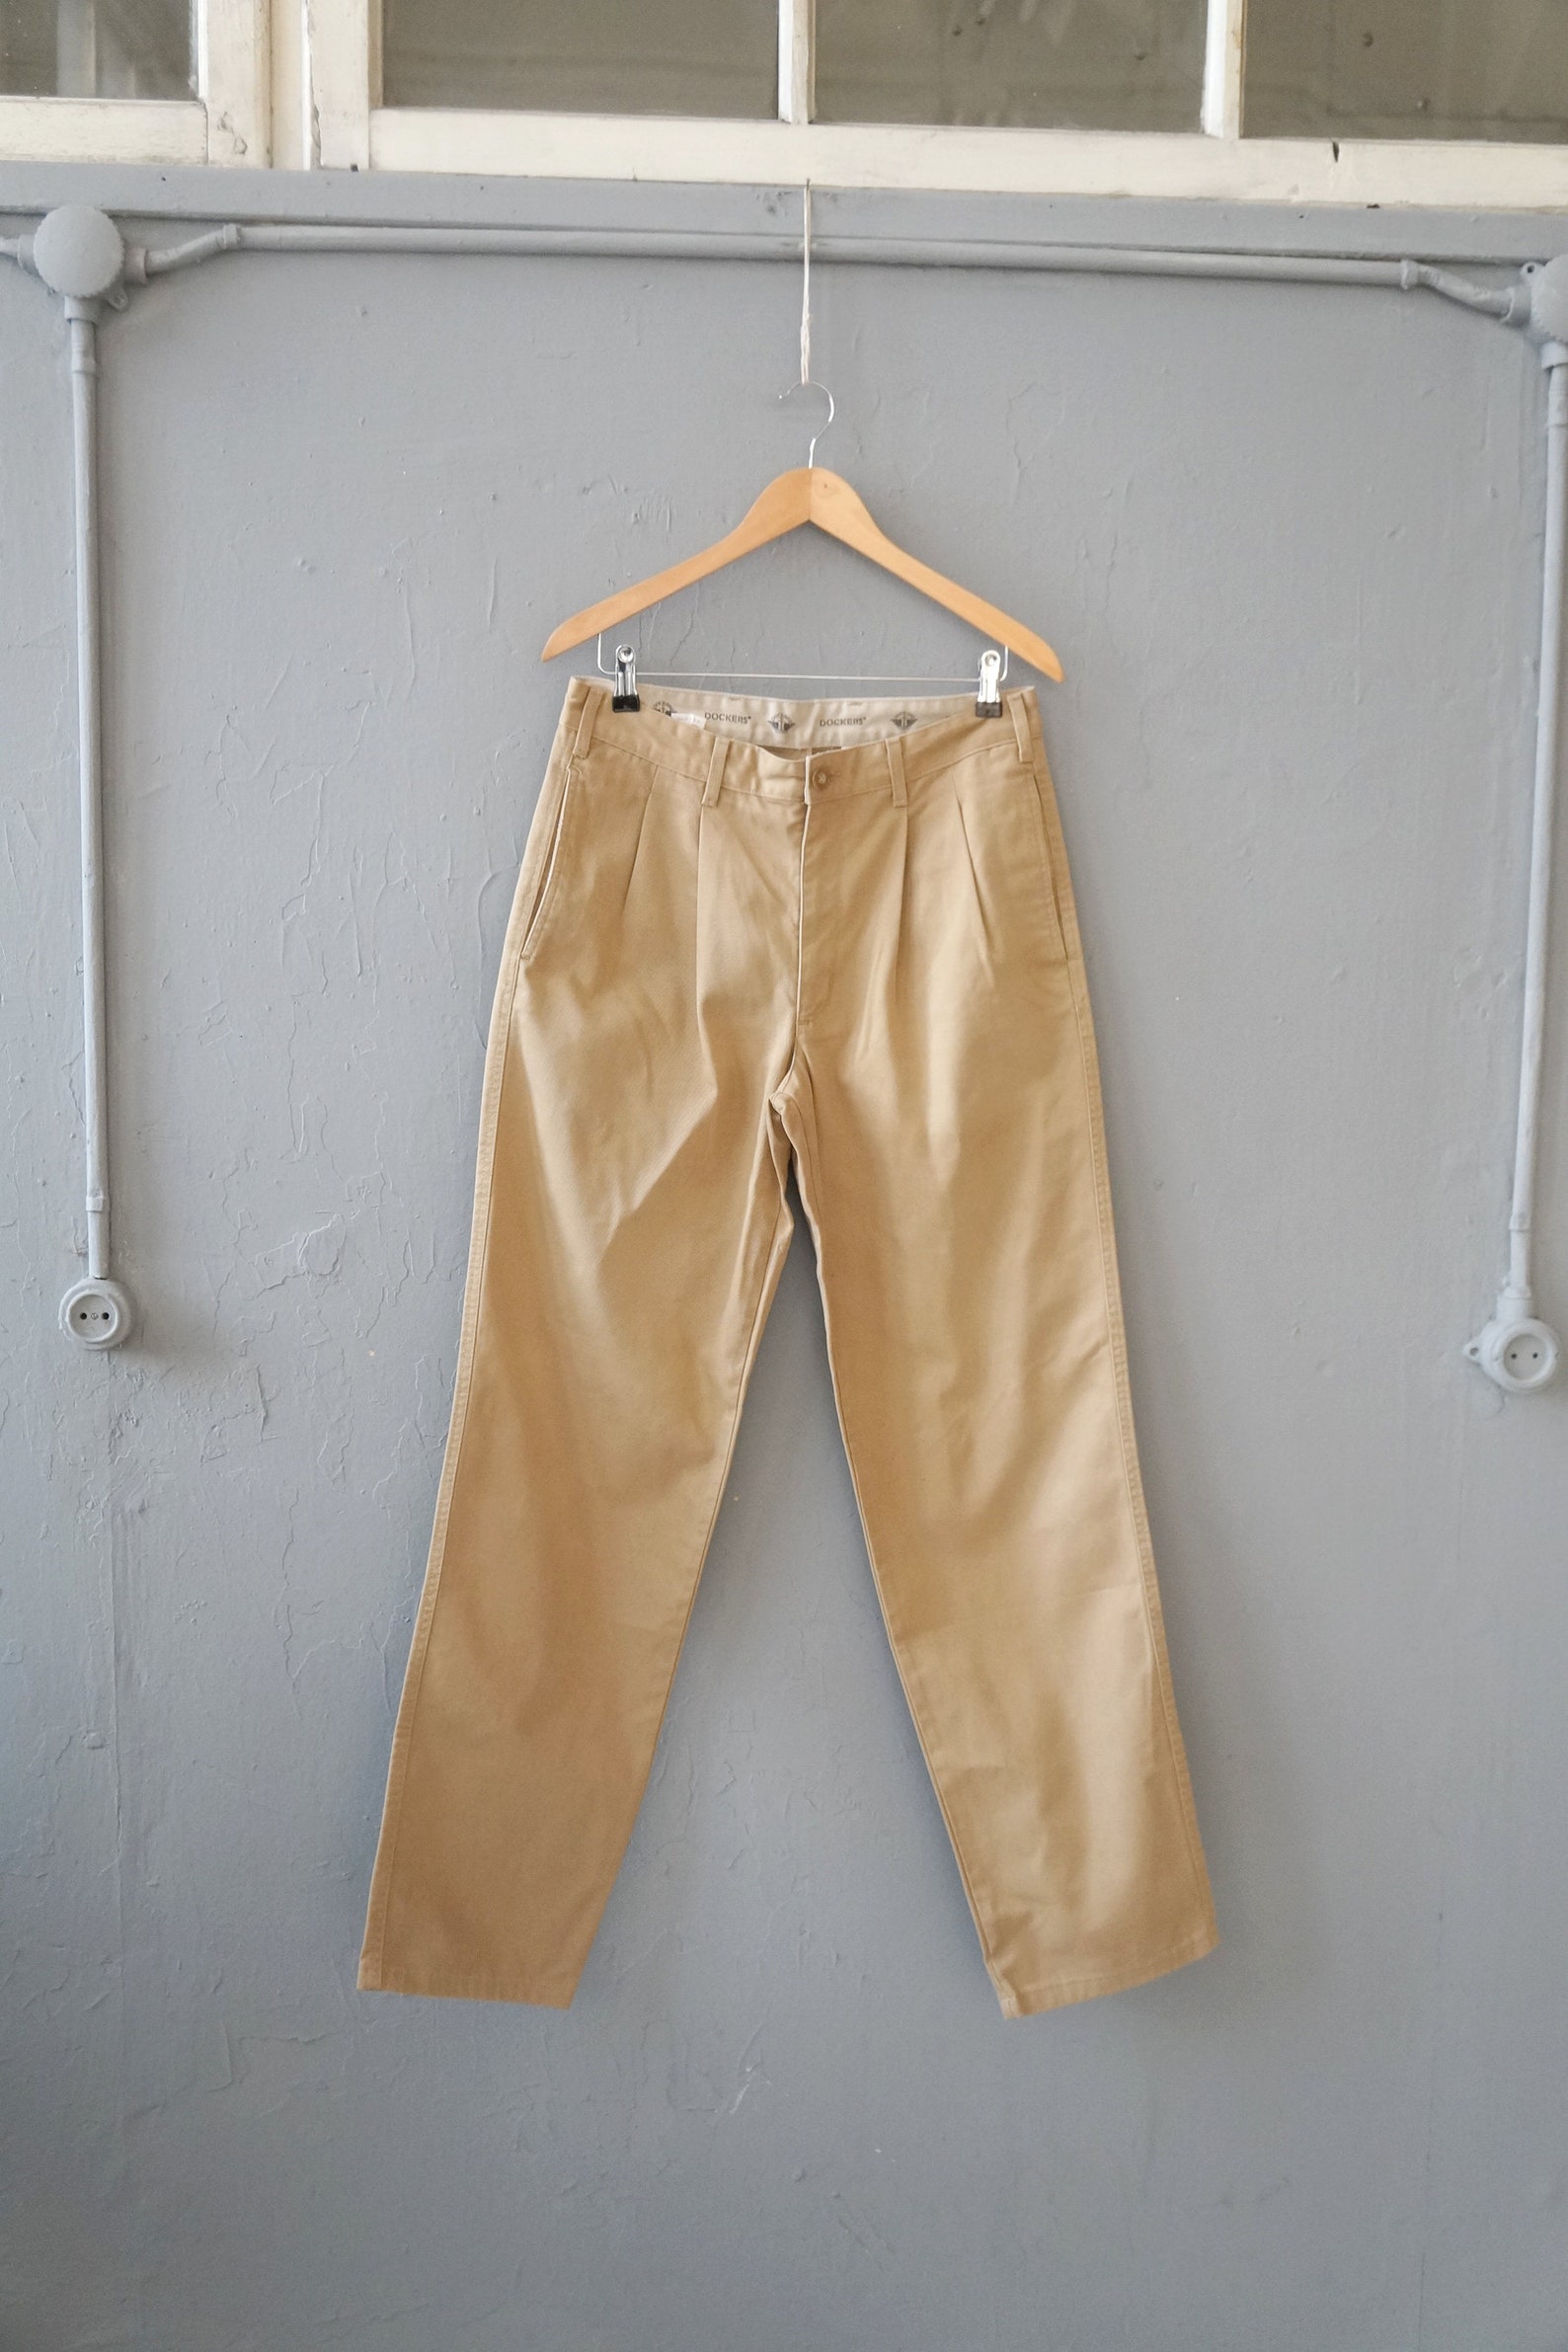 Vintage 90s Dockers Pants 32 Classic Fit Boyfriend Pants | Etsy